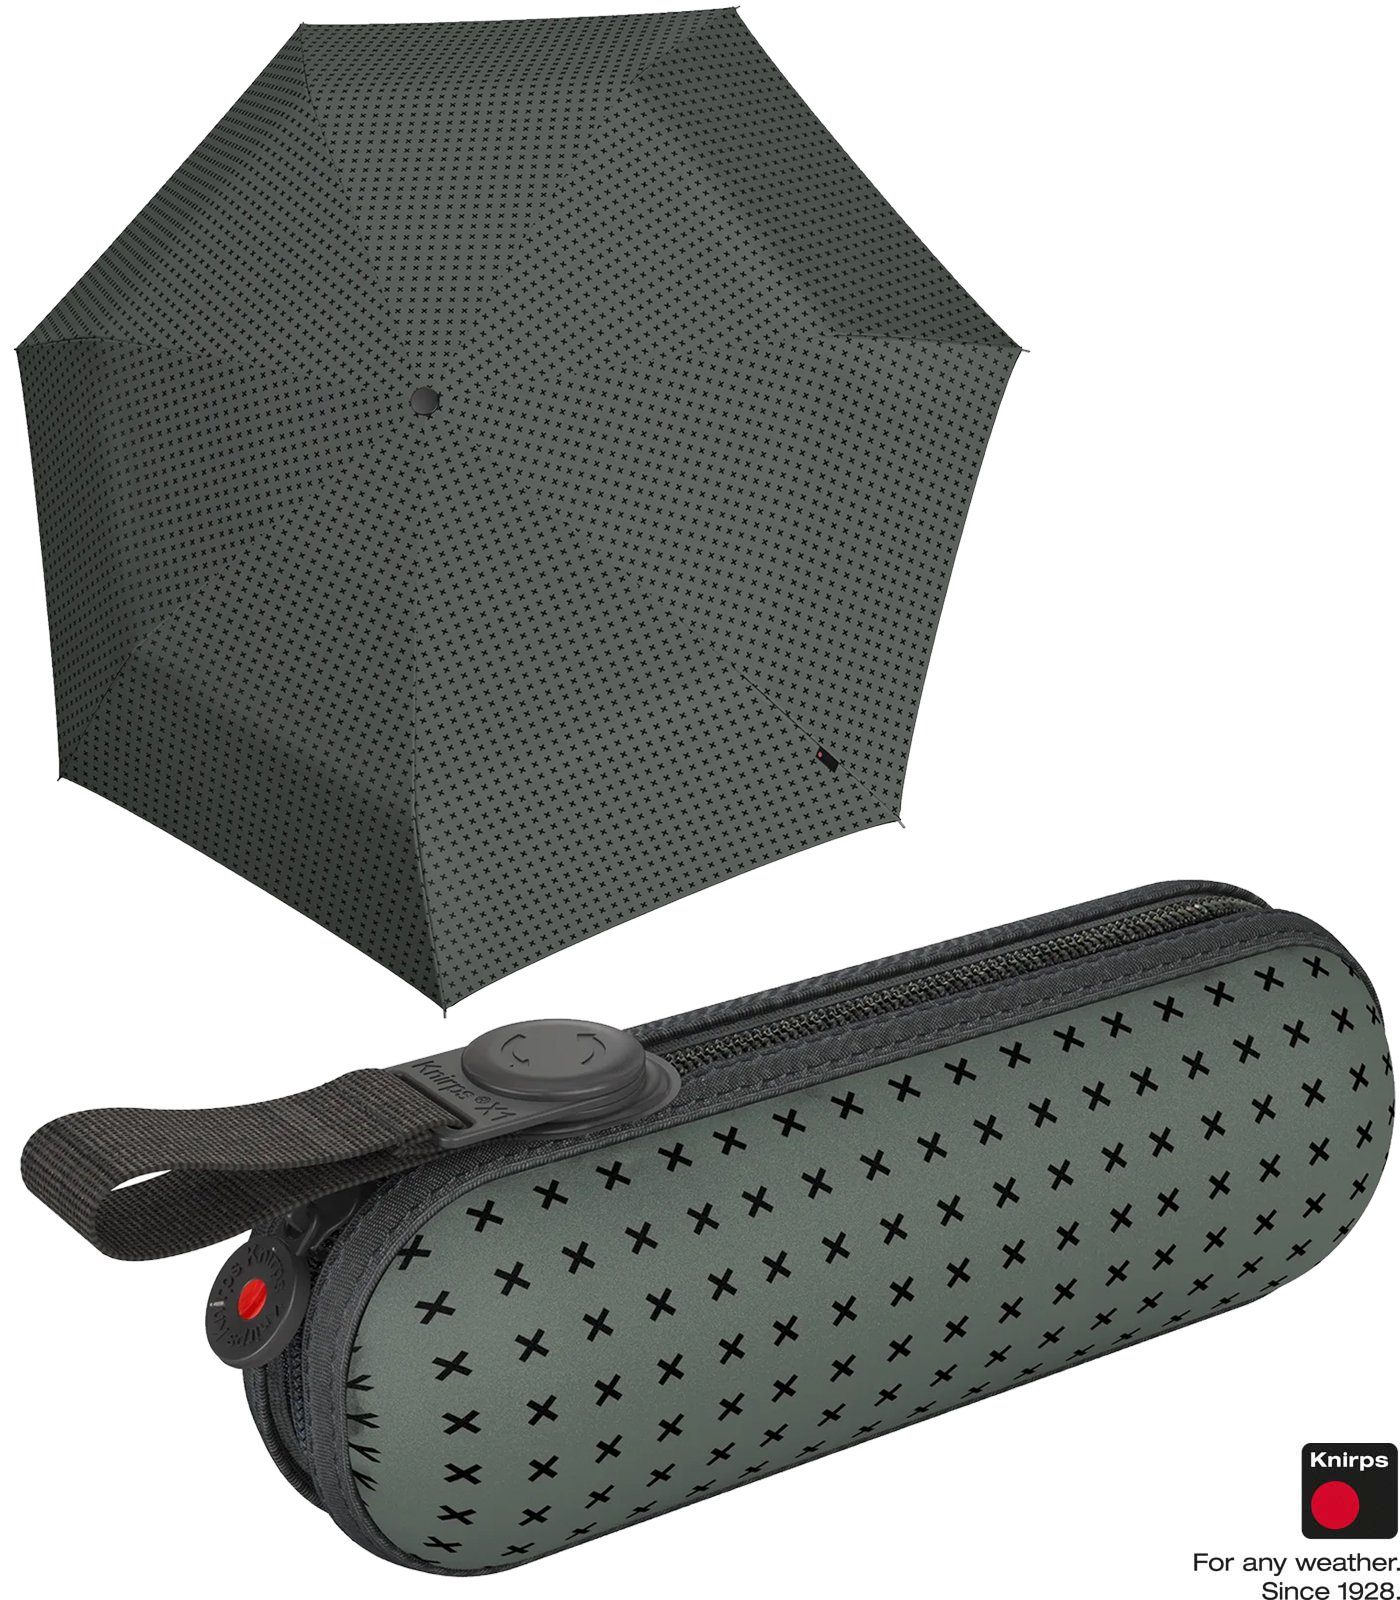 Knirps® Taschenregenschirm X1 Super kompakte Mini Begleiter 2Cross, leichte, grau der kleine, ecorepel-Technologie - mit